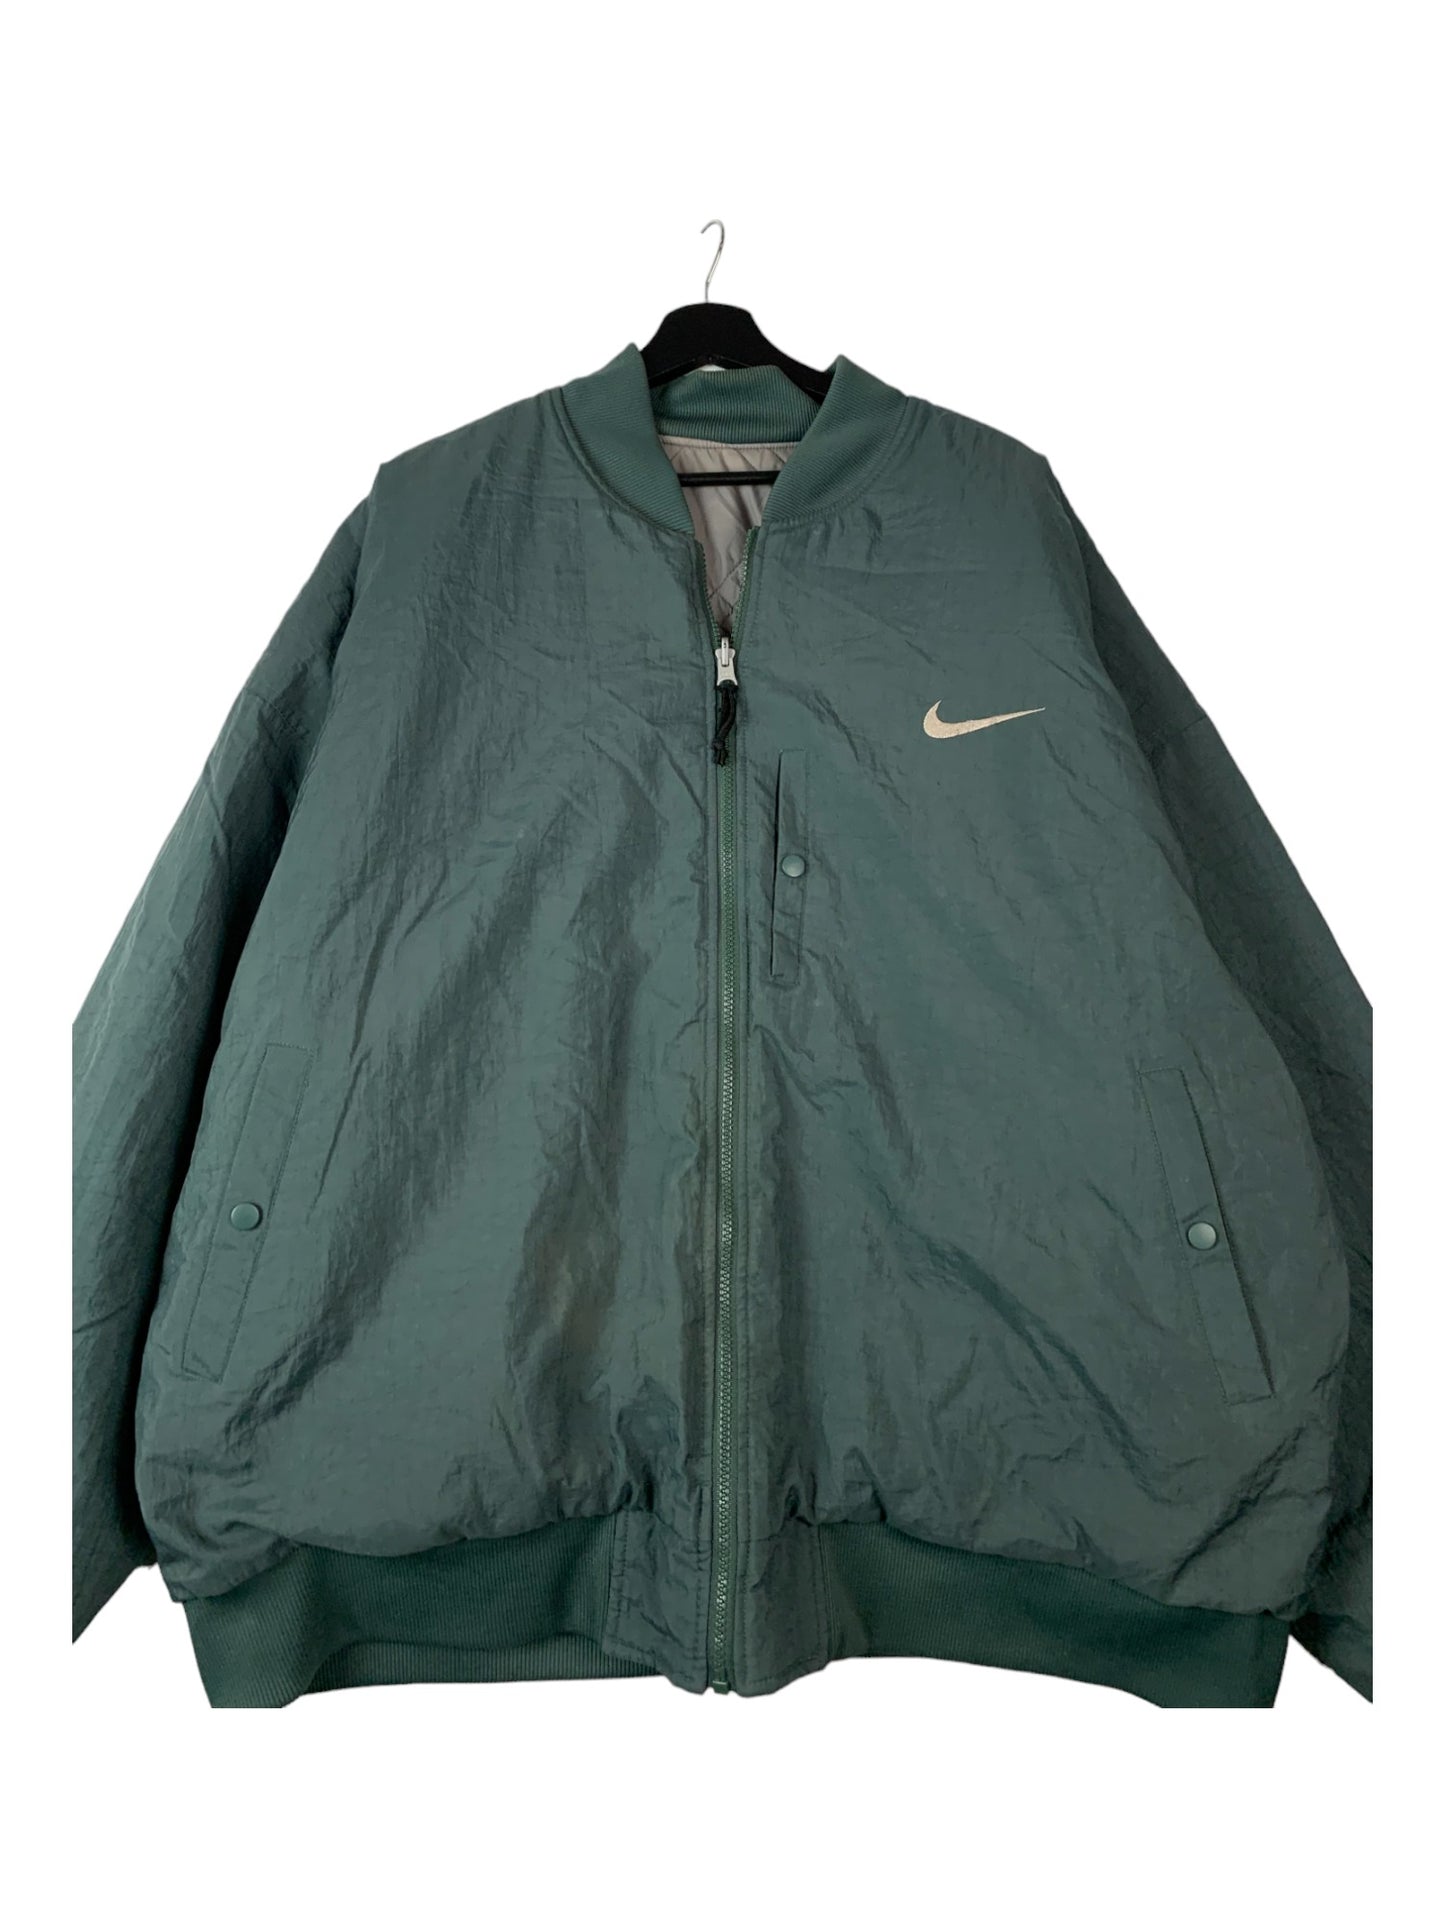 Nike Jacket Turquoise/Gray Reversible